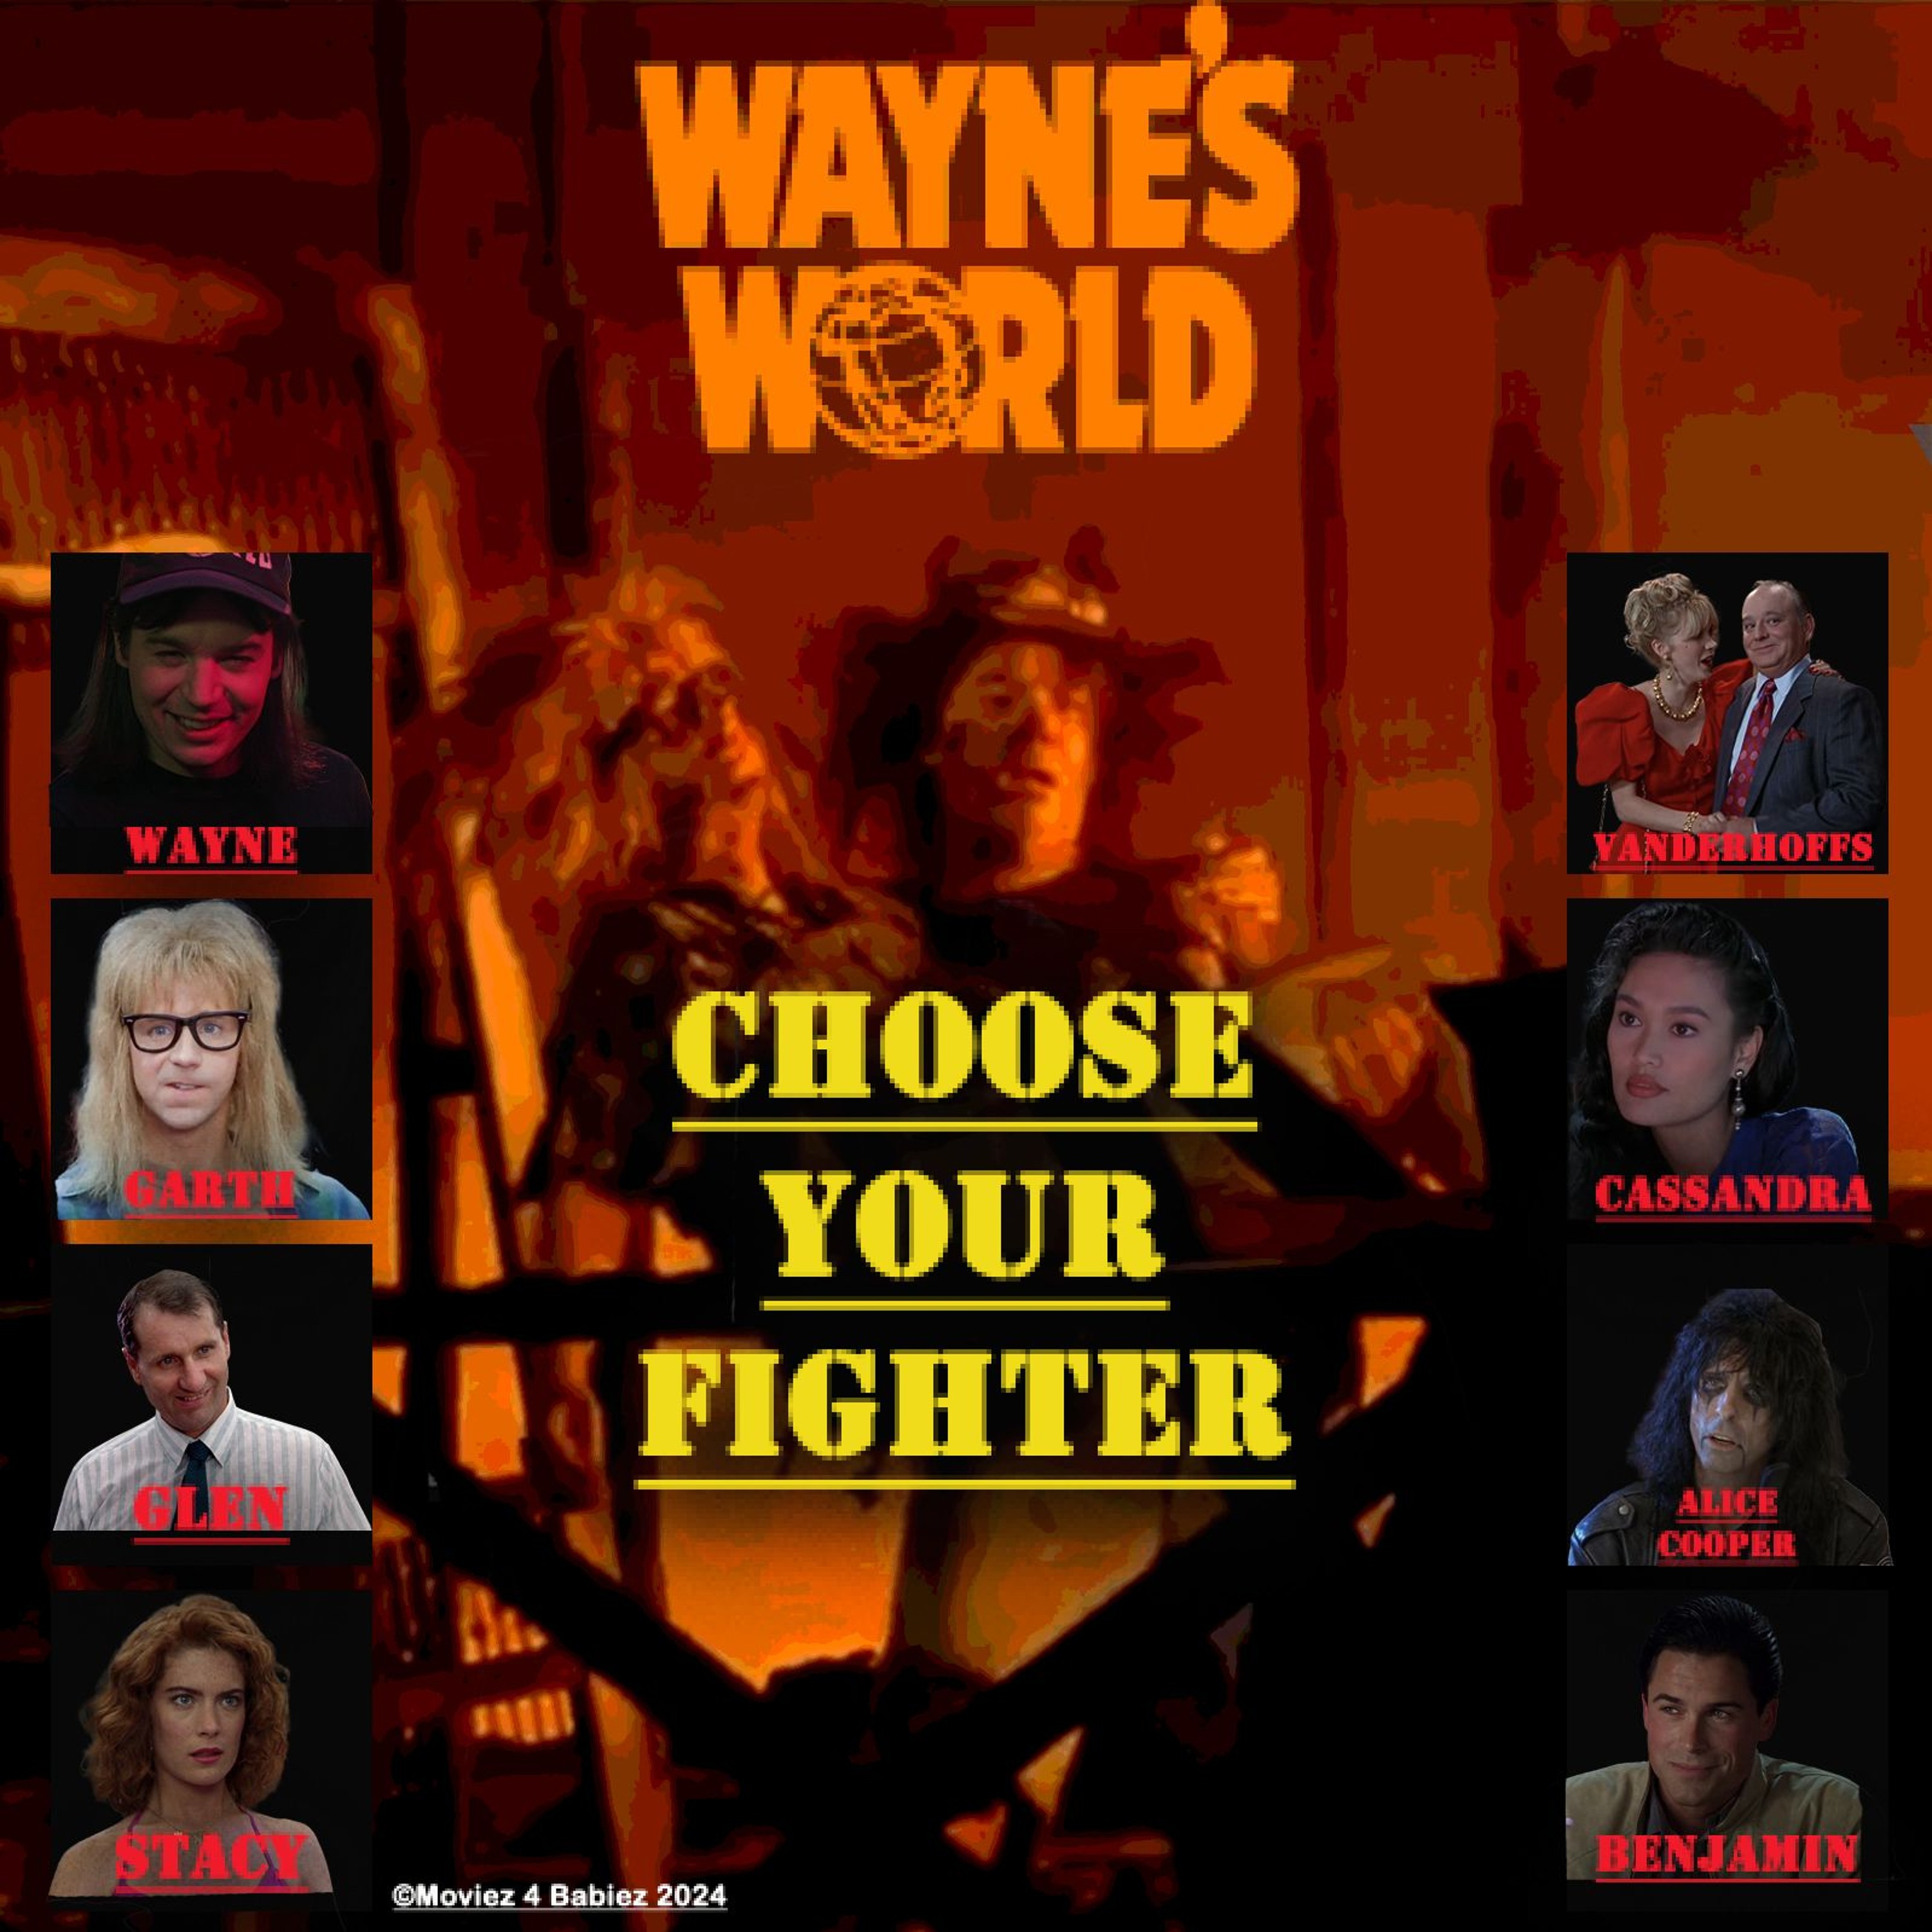 Wayne’s World (1992) - Moviez 4 Babiez